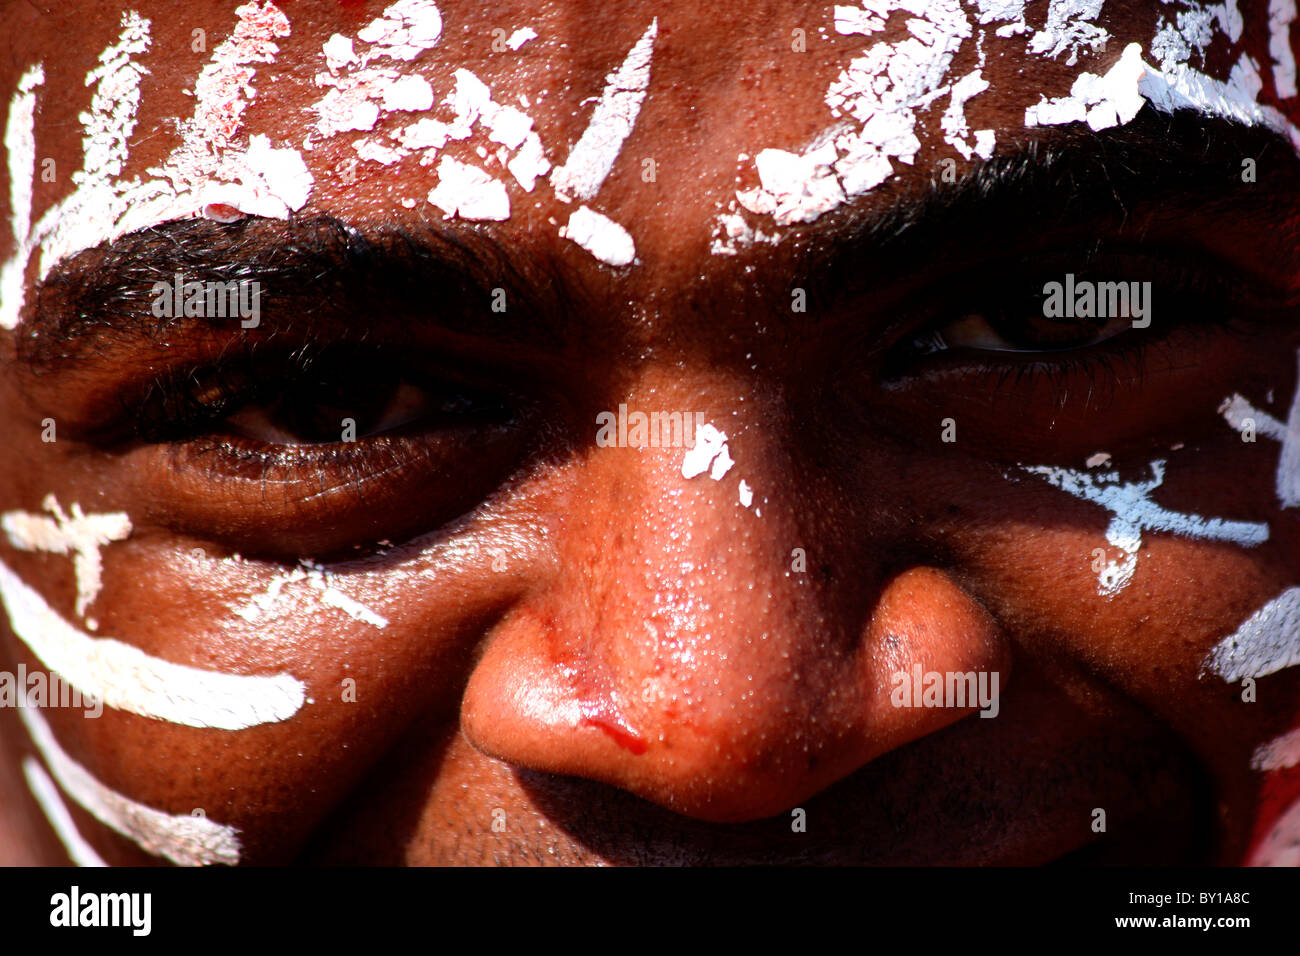 Body paint - siddi tribù di Gujarat, India Foto Stock